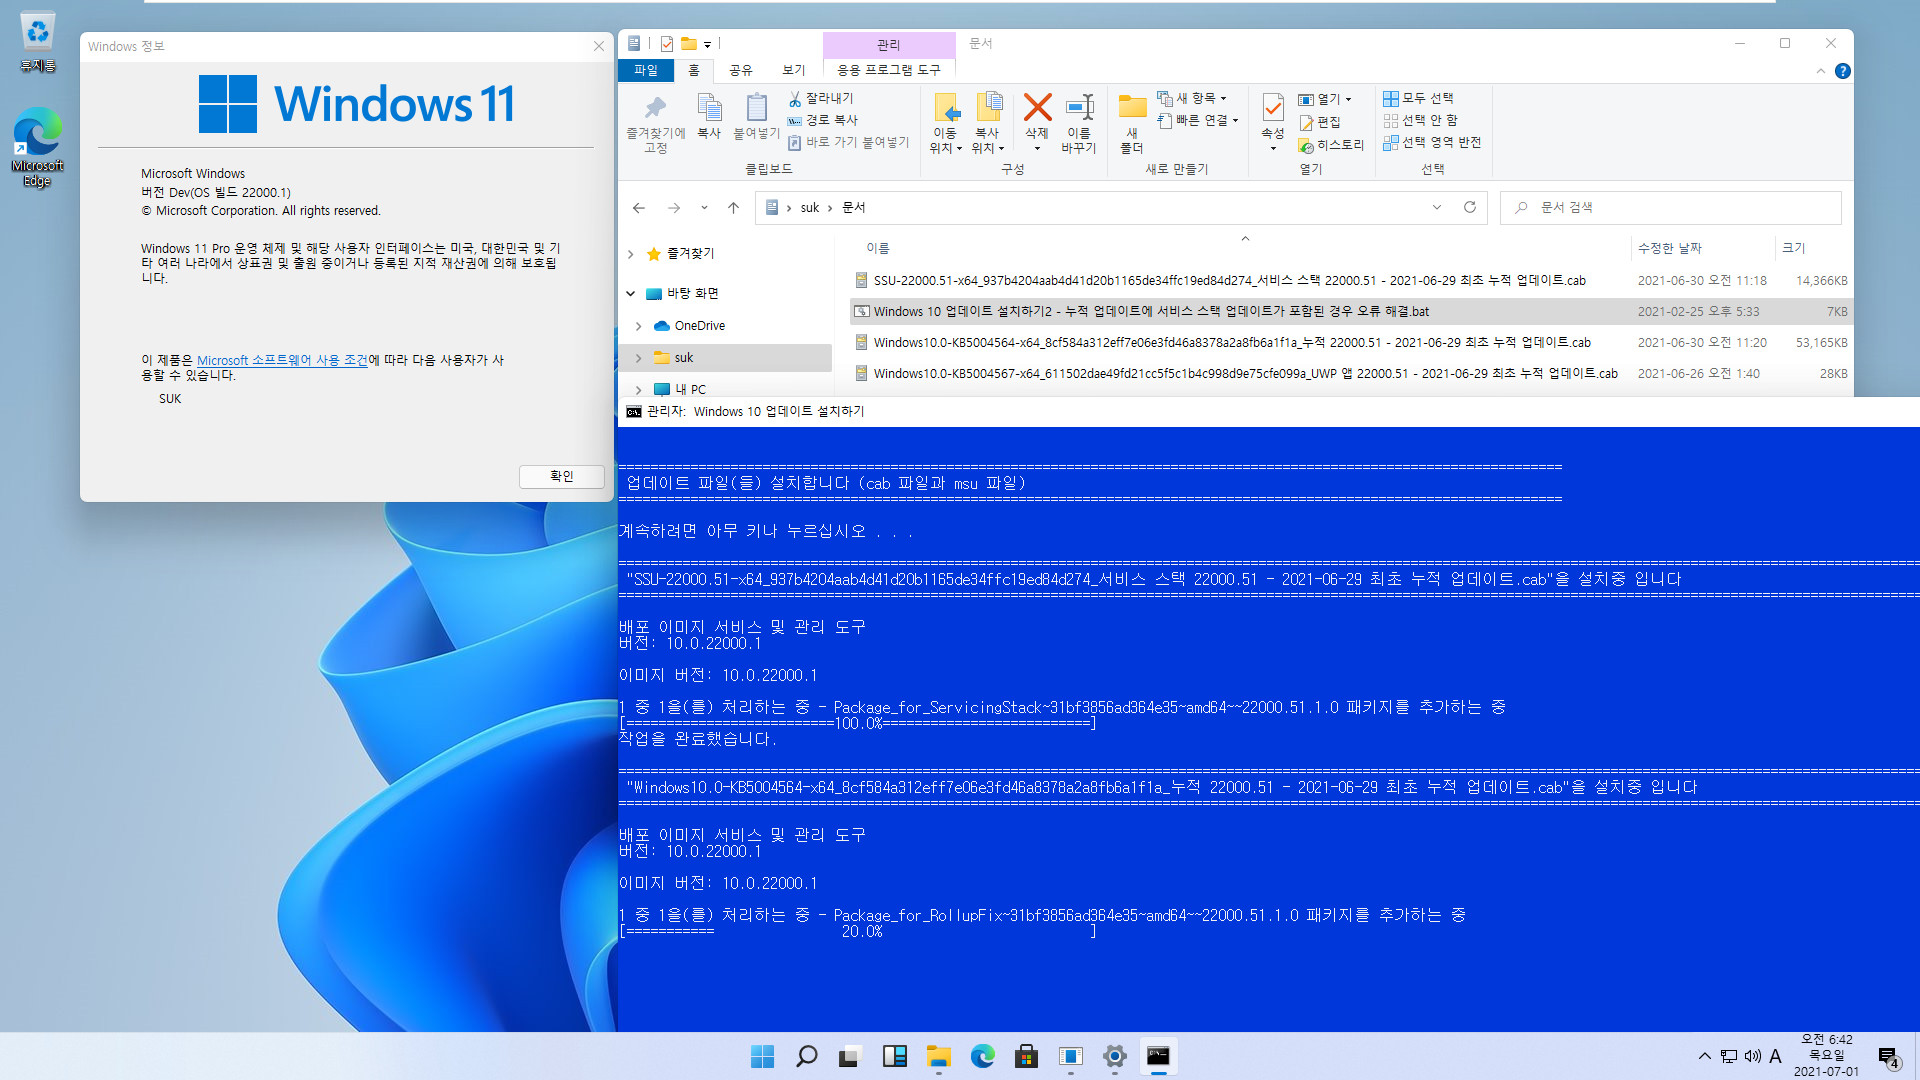 최초의 Windows 11 버전 21H2 - 22000.51 빌드와 22000.1 빌드 차이점들 - 22000.51 누적 업데이트 설치하기 위하여 개발자 채널 활성 2021-07-01_064249.jpg